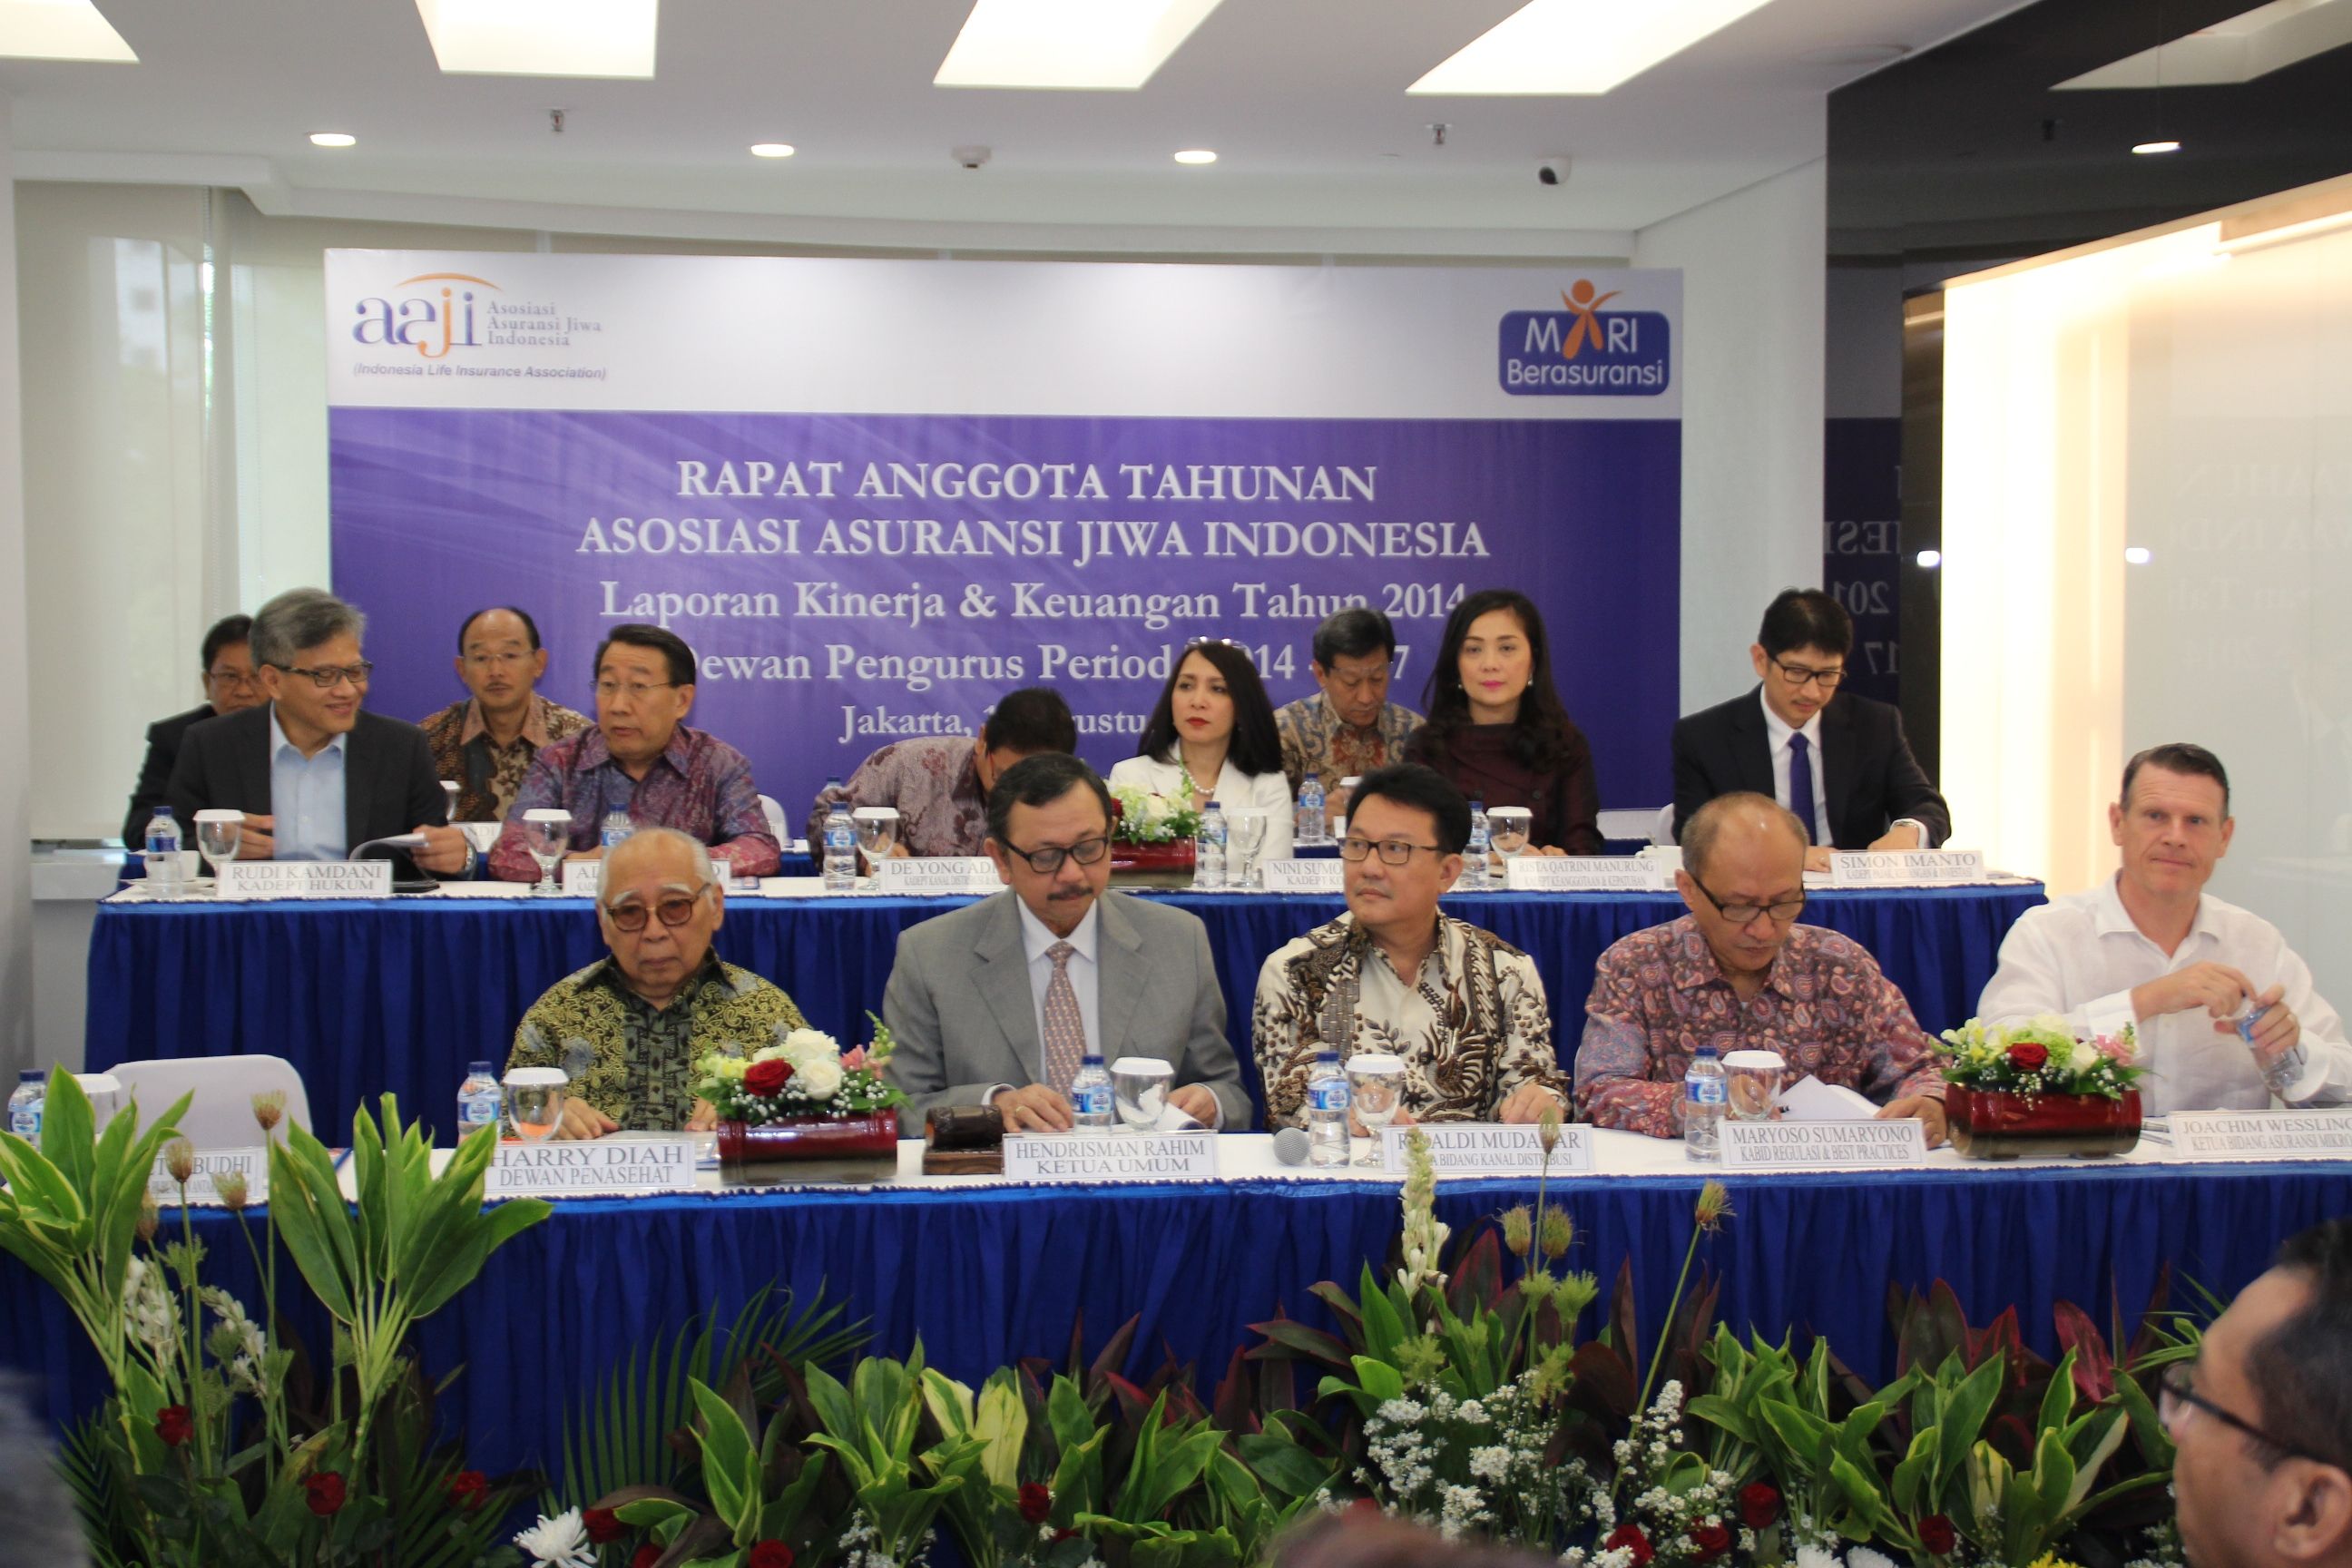 <p>Rapat Anggota Tahunan Asosiasi Asuransi Jiwa Indonesia (AAJI) / Aaji.or.id</p>
